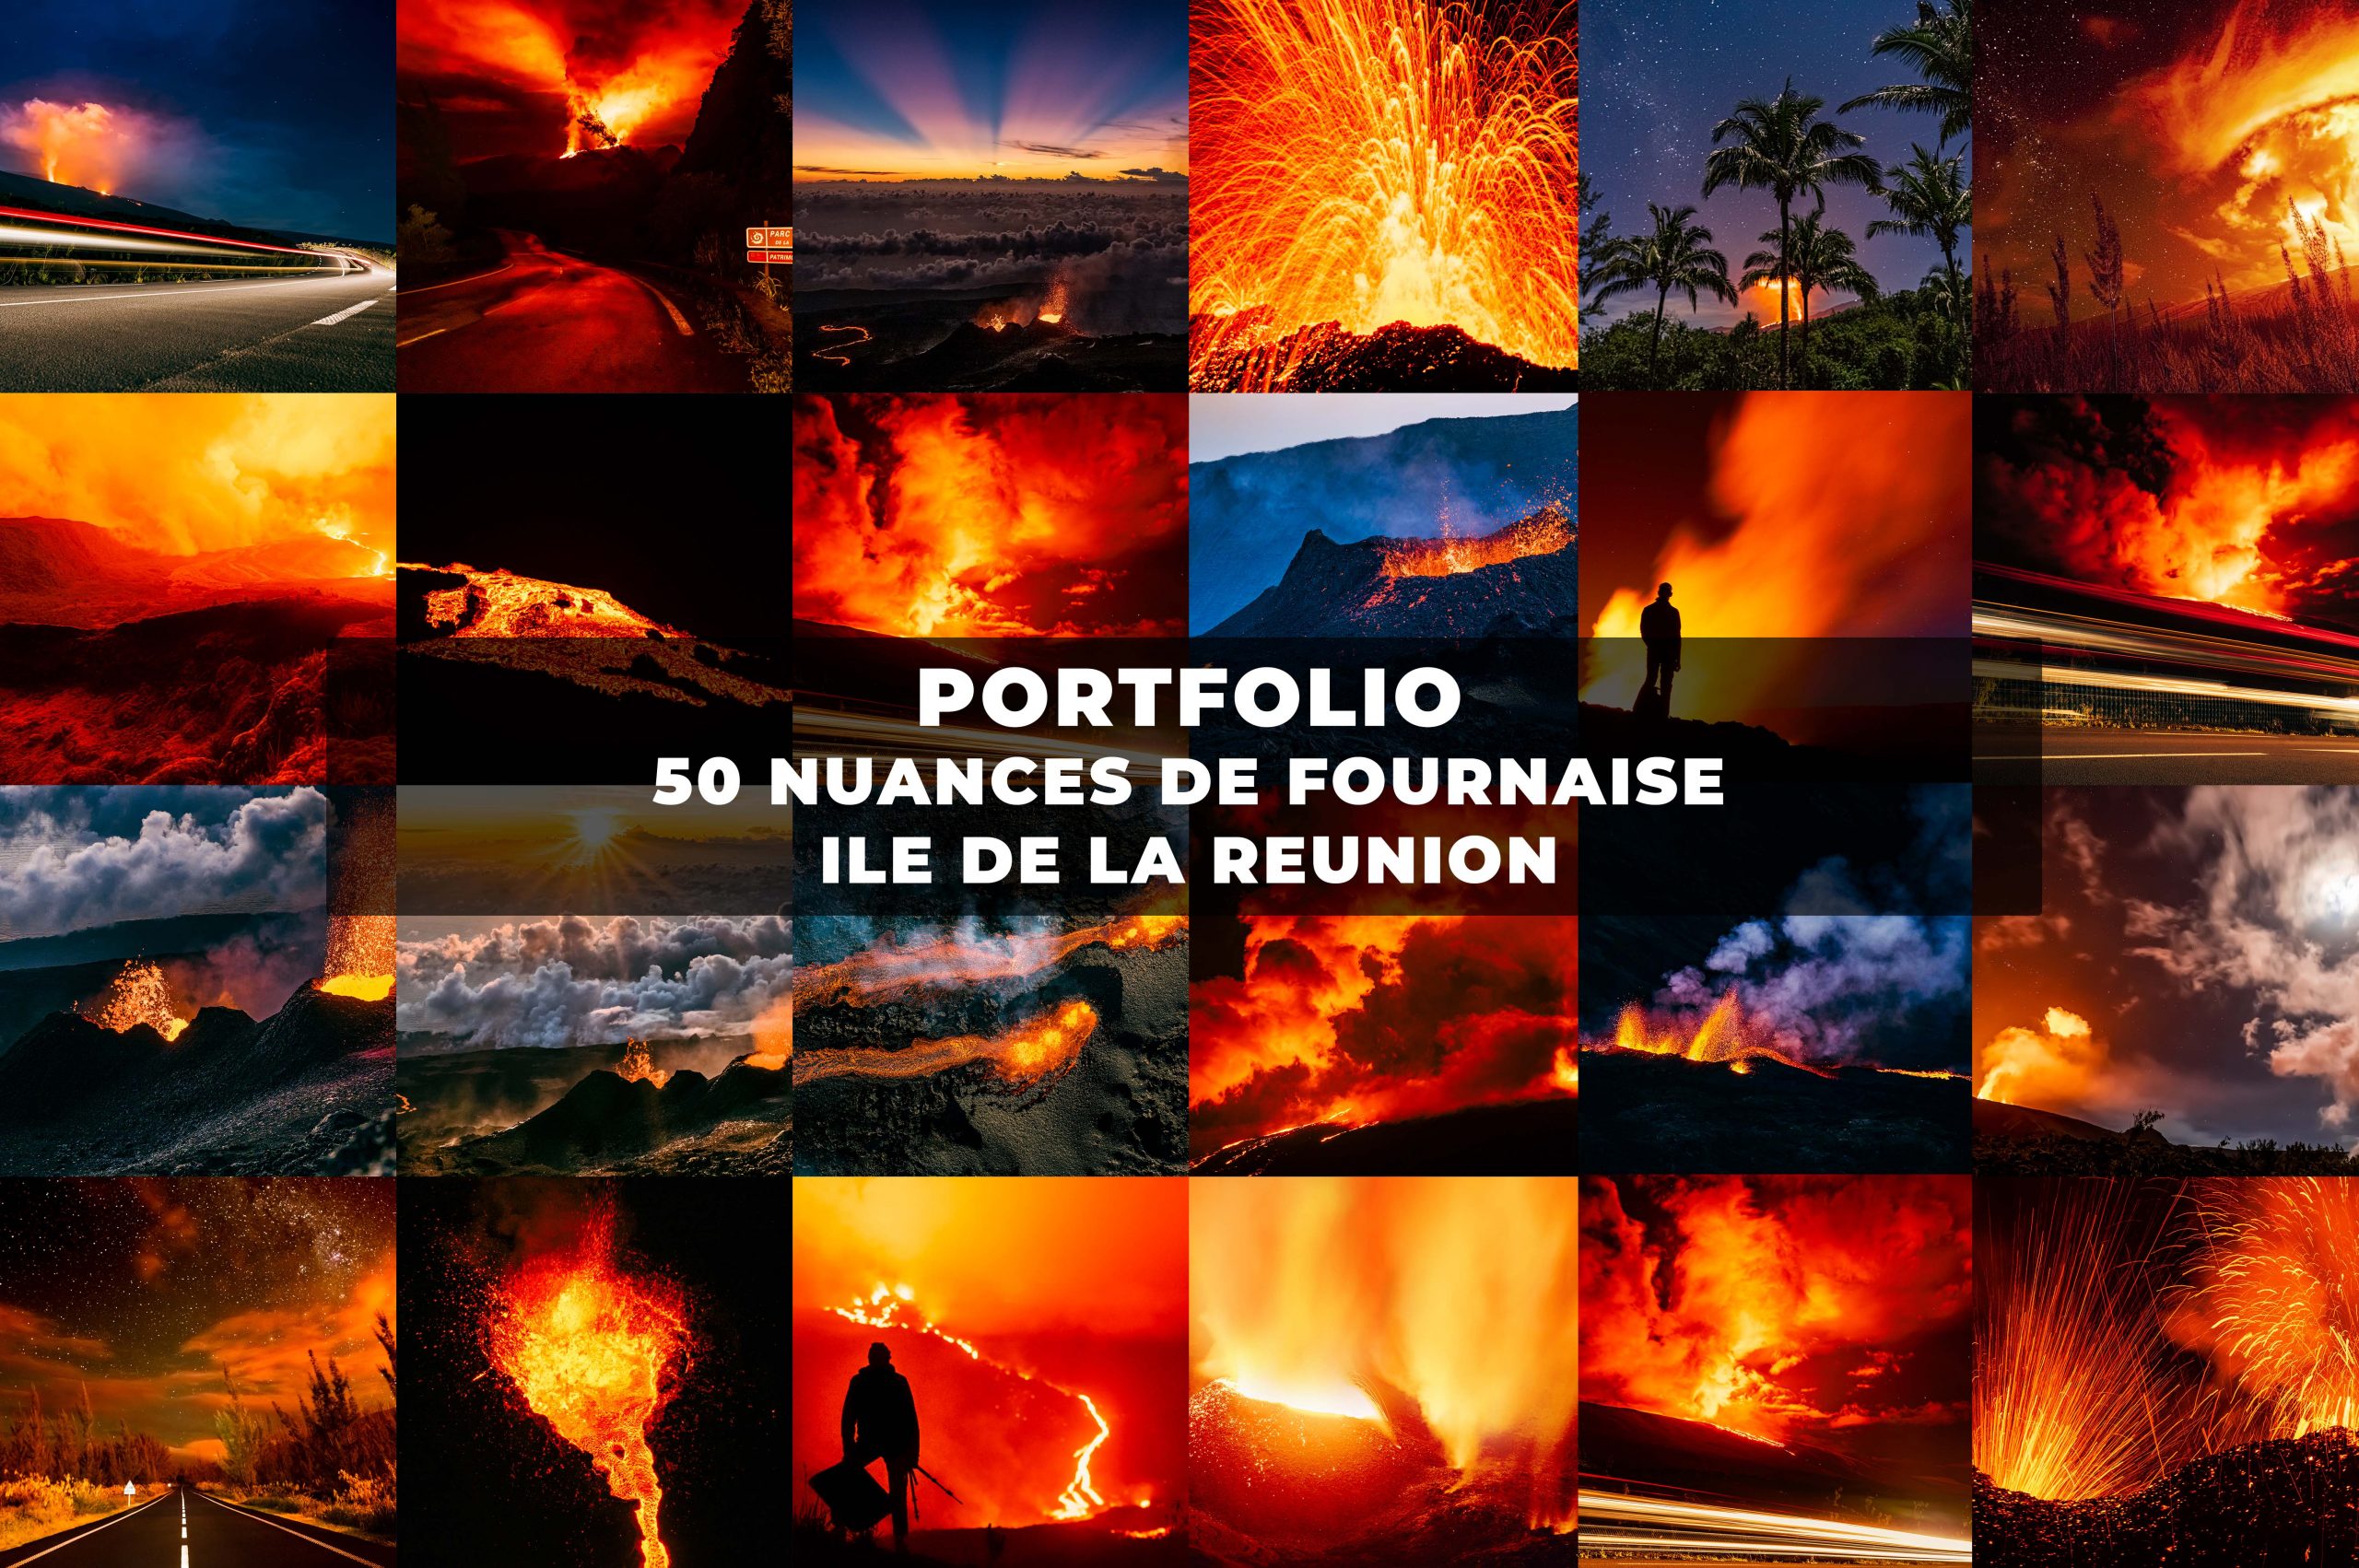 Portfolio 50 Nuances - Piton de La de Fournaise, île de La Réunion © Brieuc Coessens